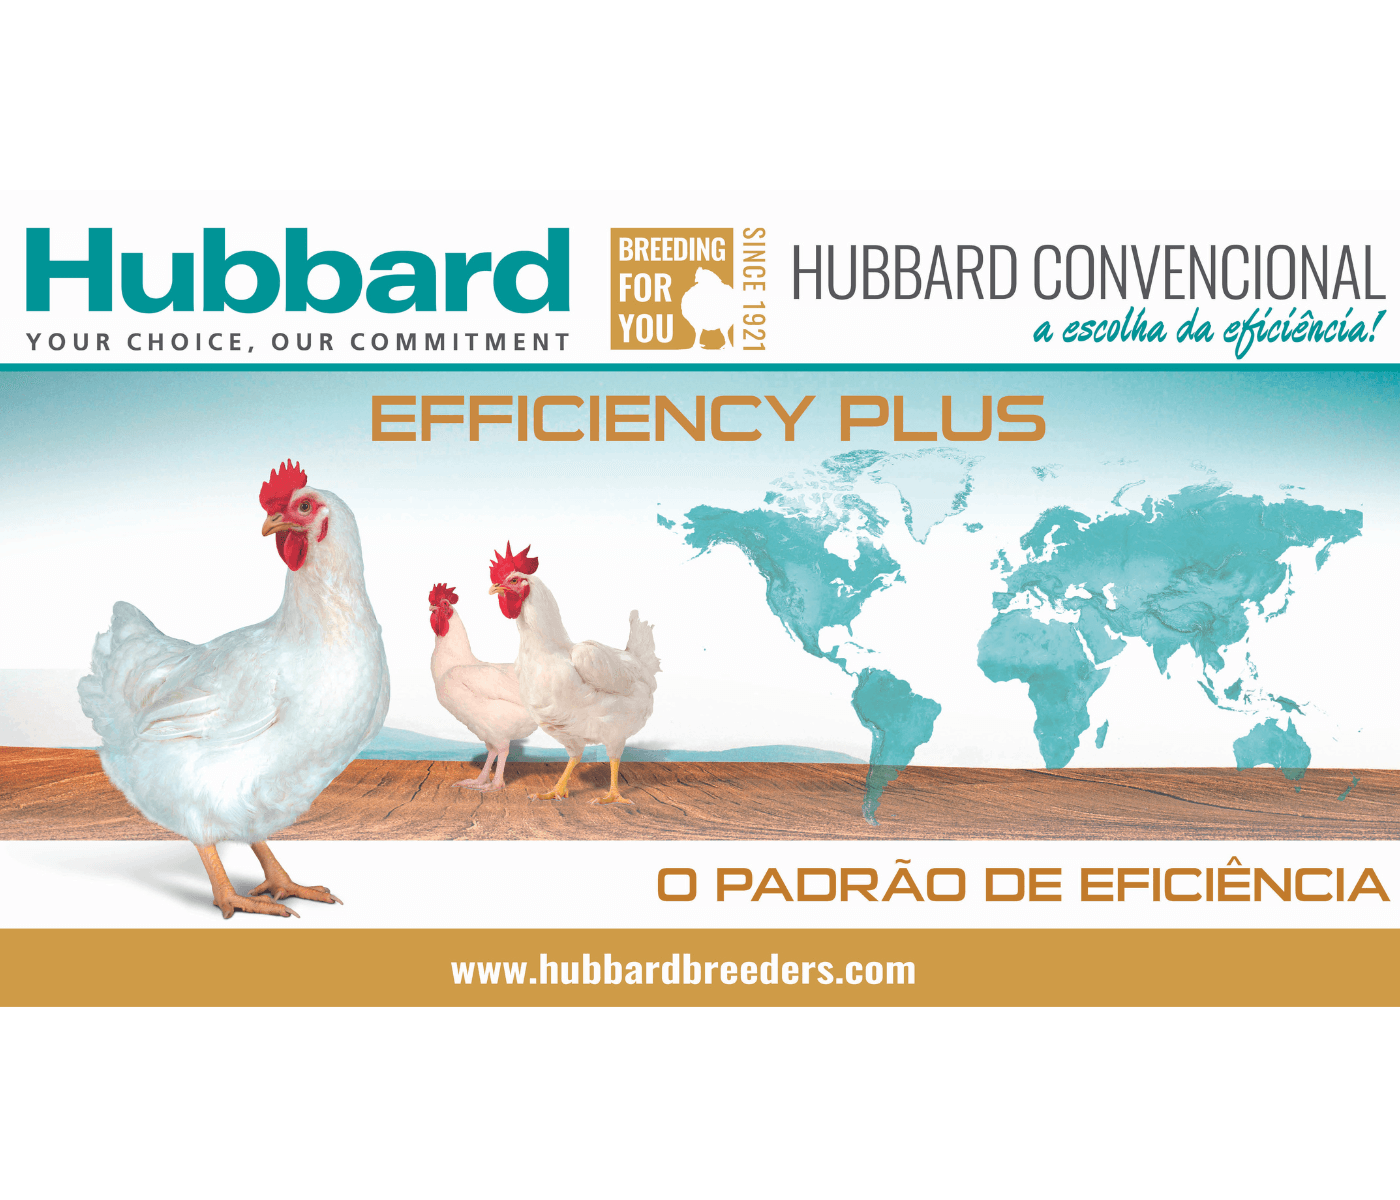 Aviagen investe R$ 50 milhões para garantir o fornecimento de aves Hubbard na América Latina